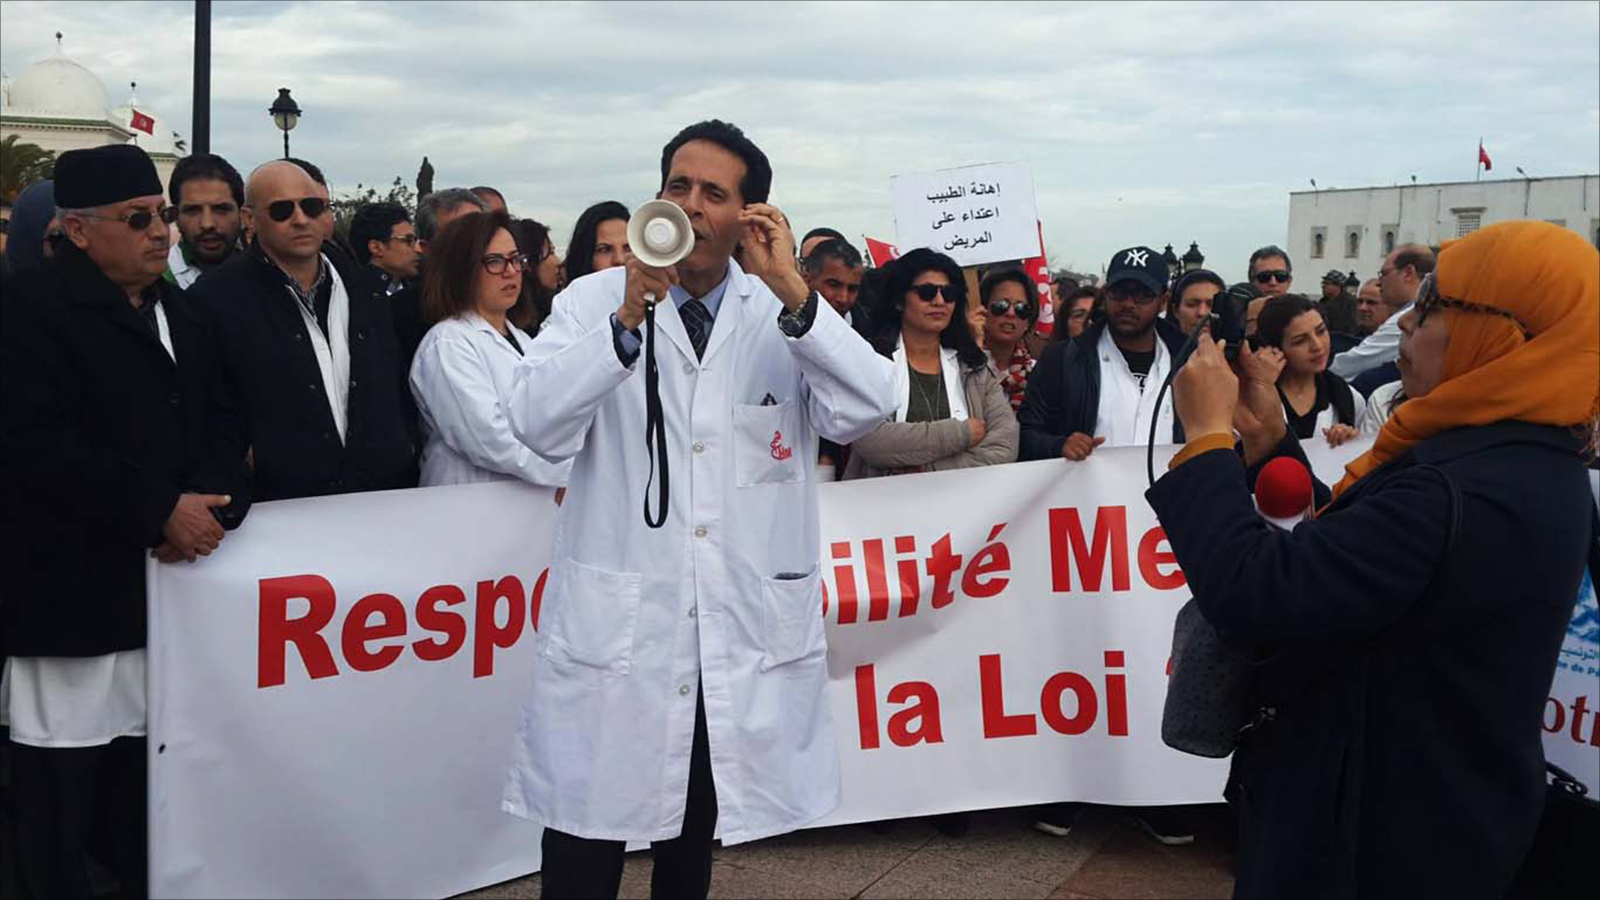 ‪أطباء تونس يحتجون رفضا لتعميم الأخطاء‬ أطباء تونس يحتجون رفضا لتعميم الأخطاء (الجزيرة)